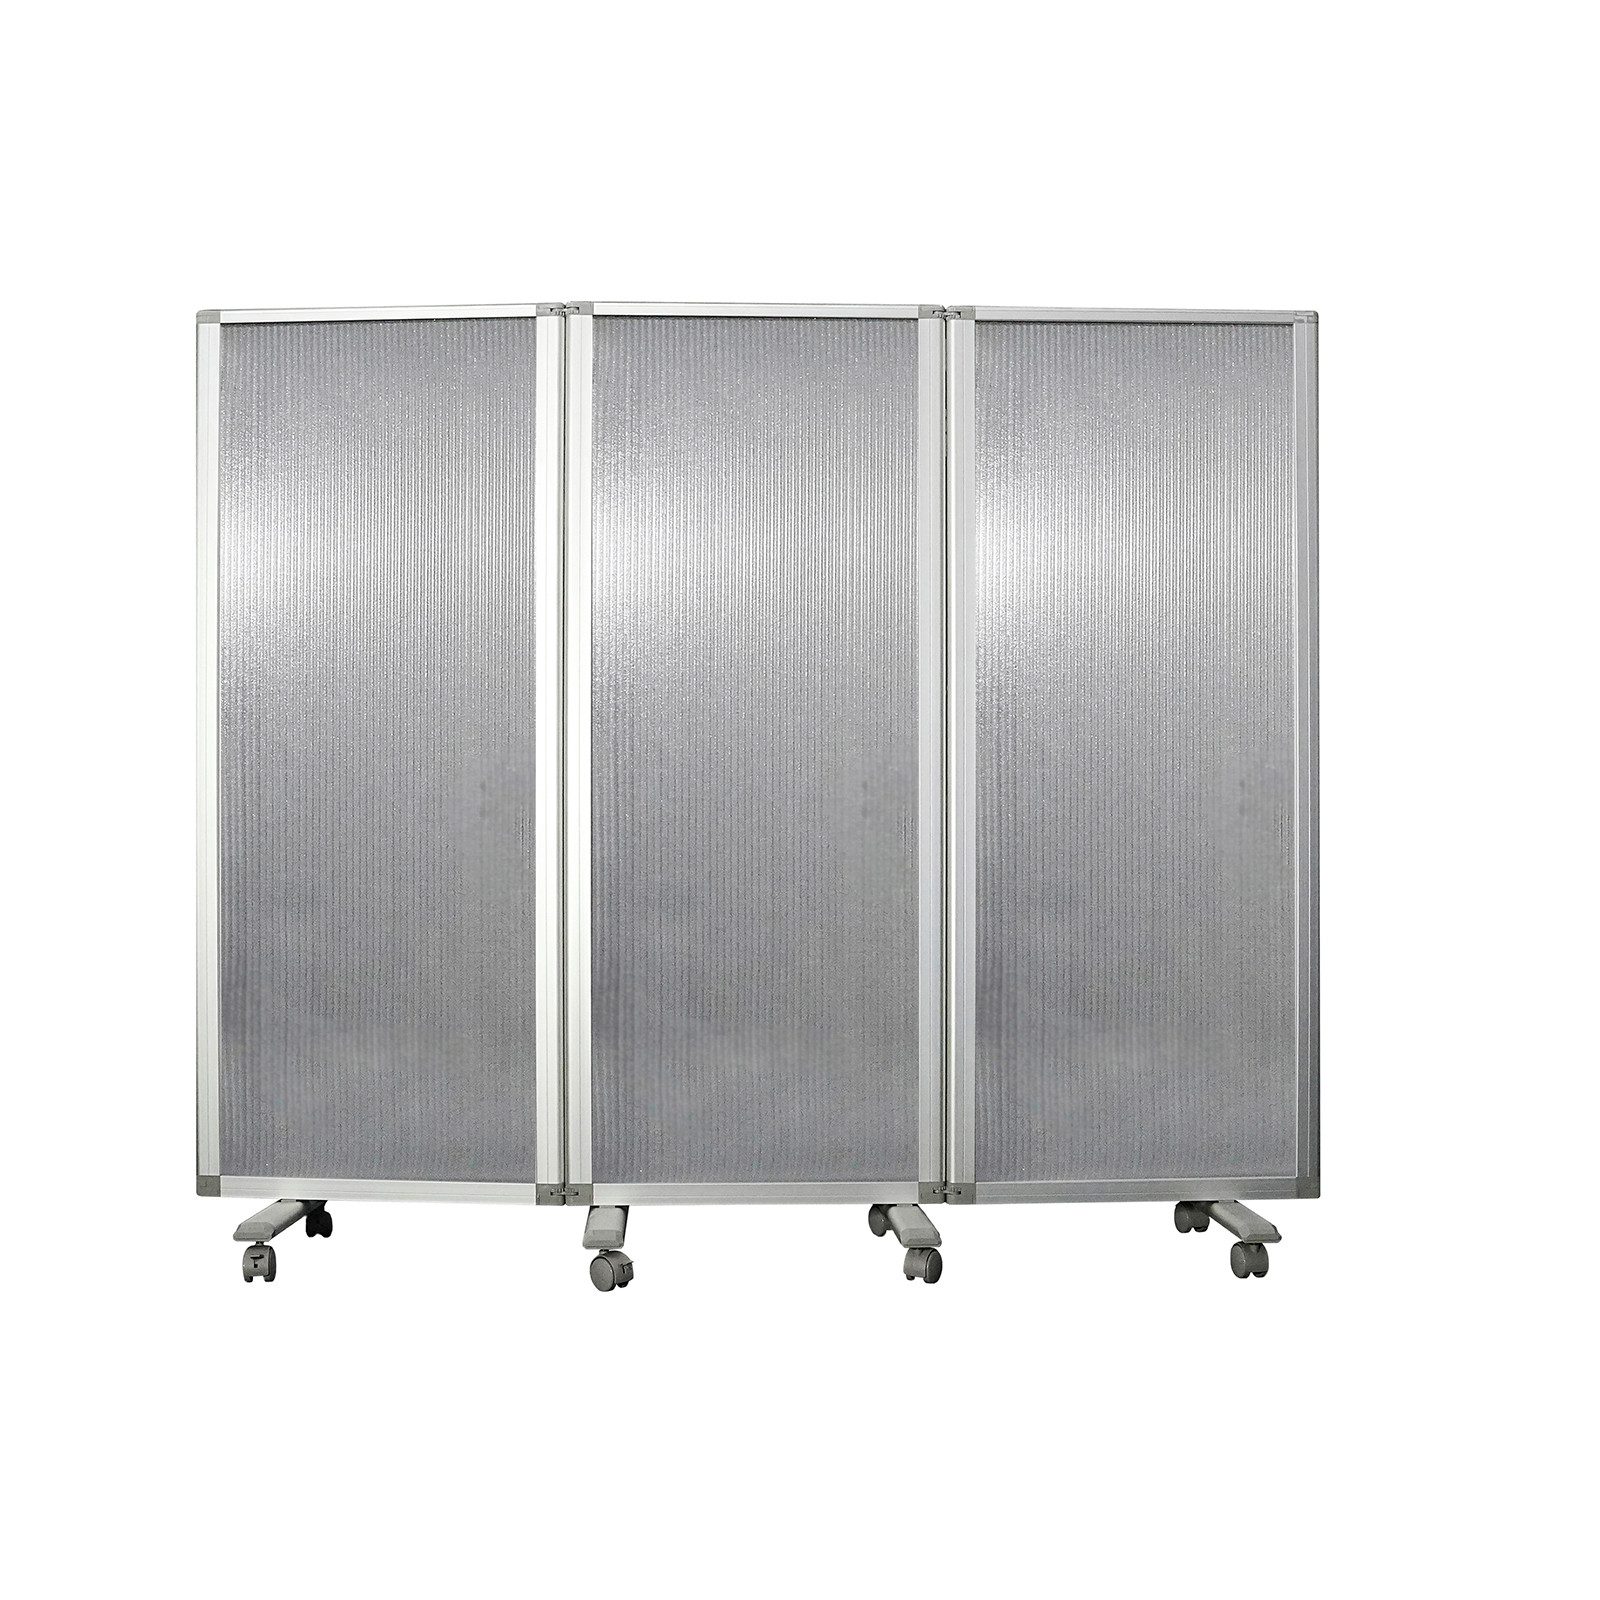 Kubus Paravent Doppelseitige Trennwand, Rahmen aus Aluminium (3 St), Verschiedene Ausführungen